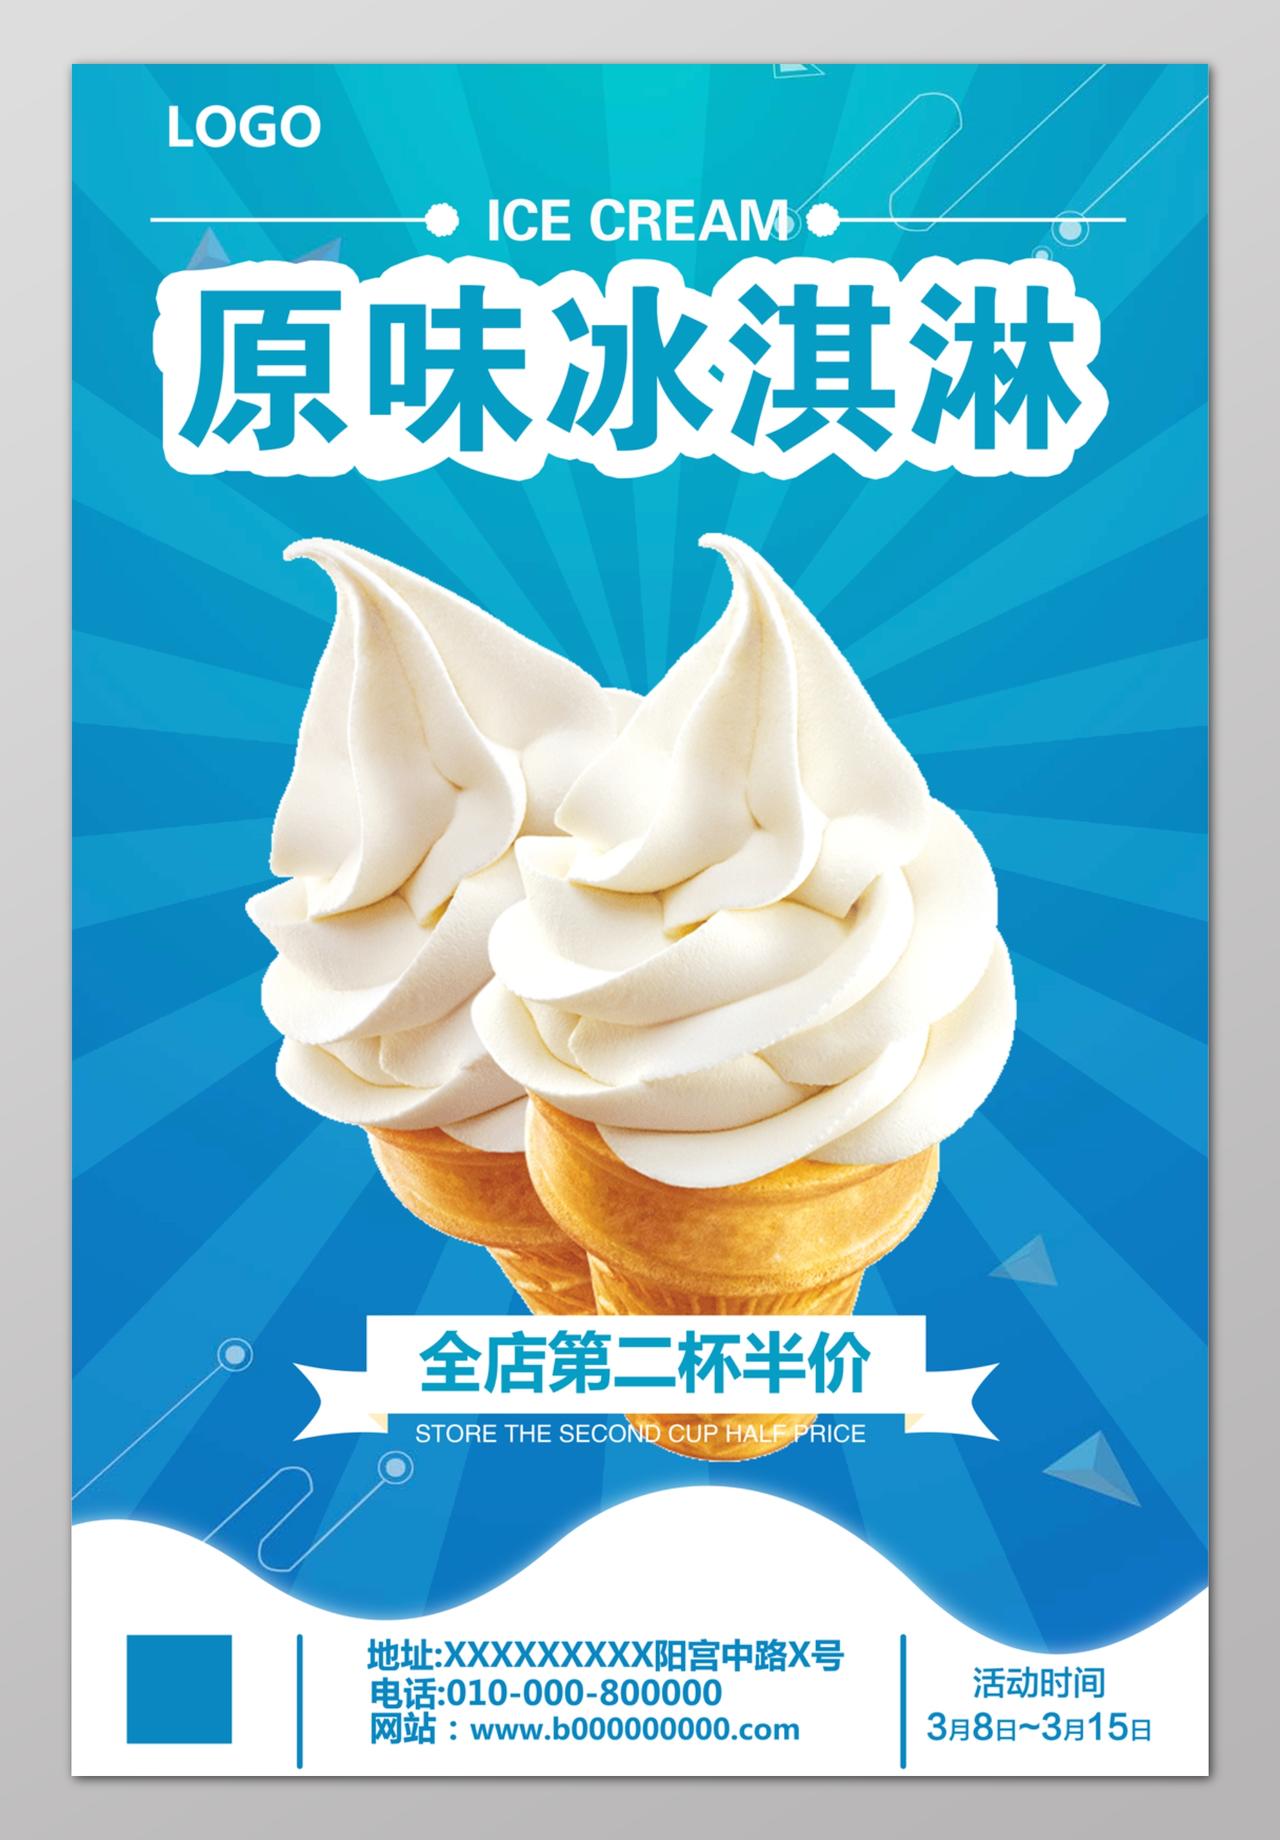 冰淇淋原味冰淇淋冰爽蓝海报设计